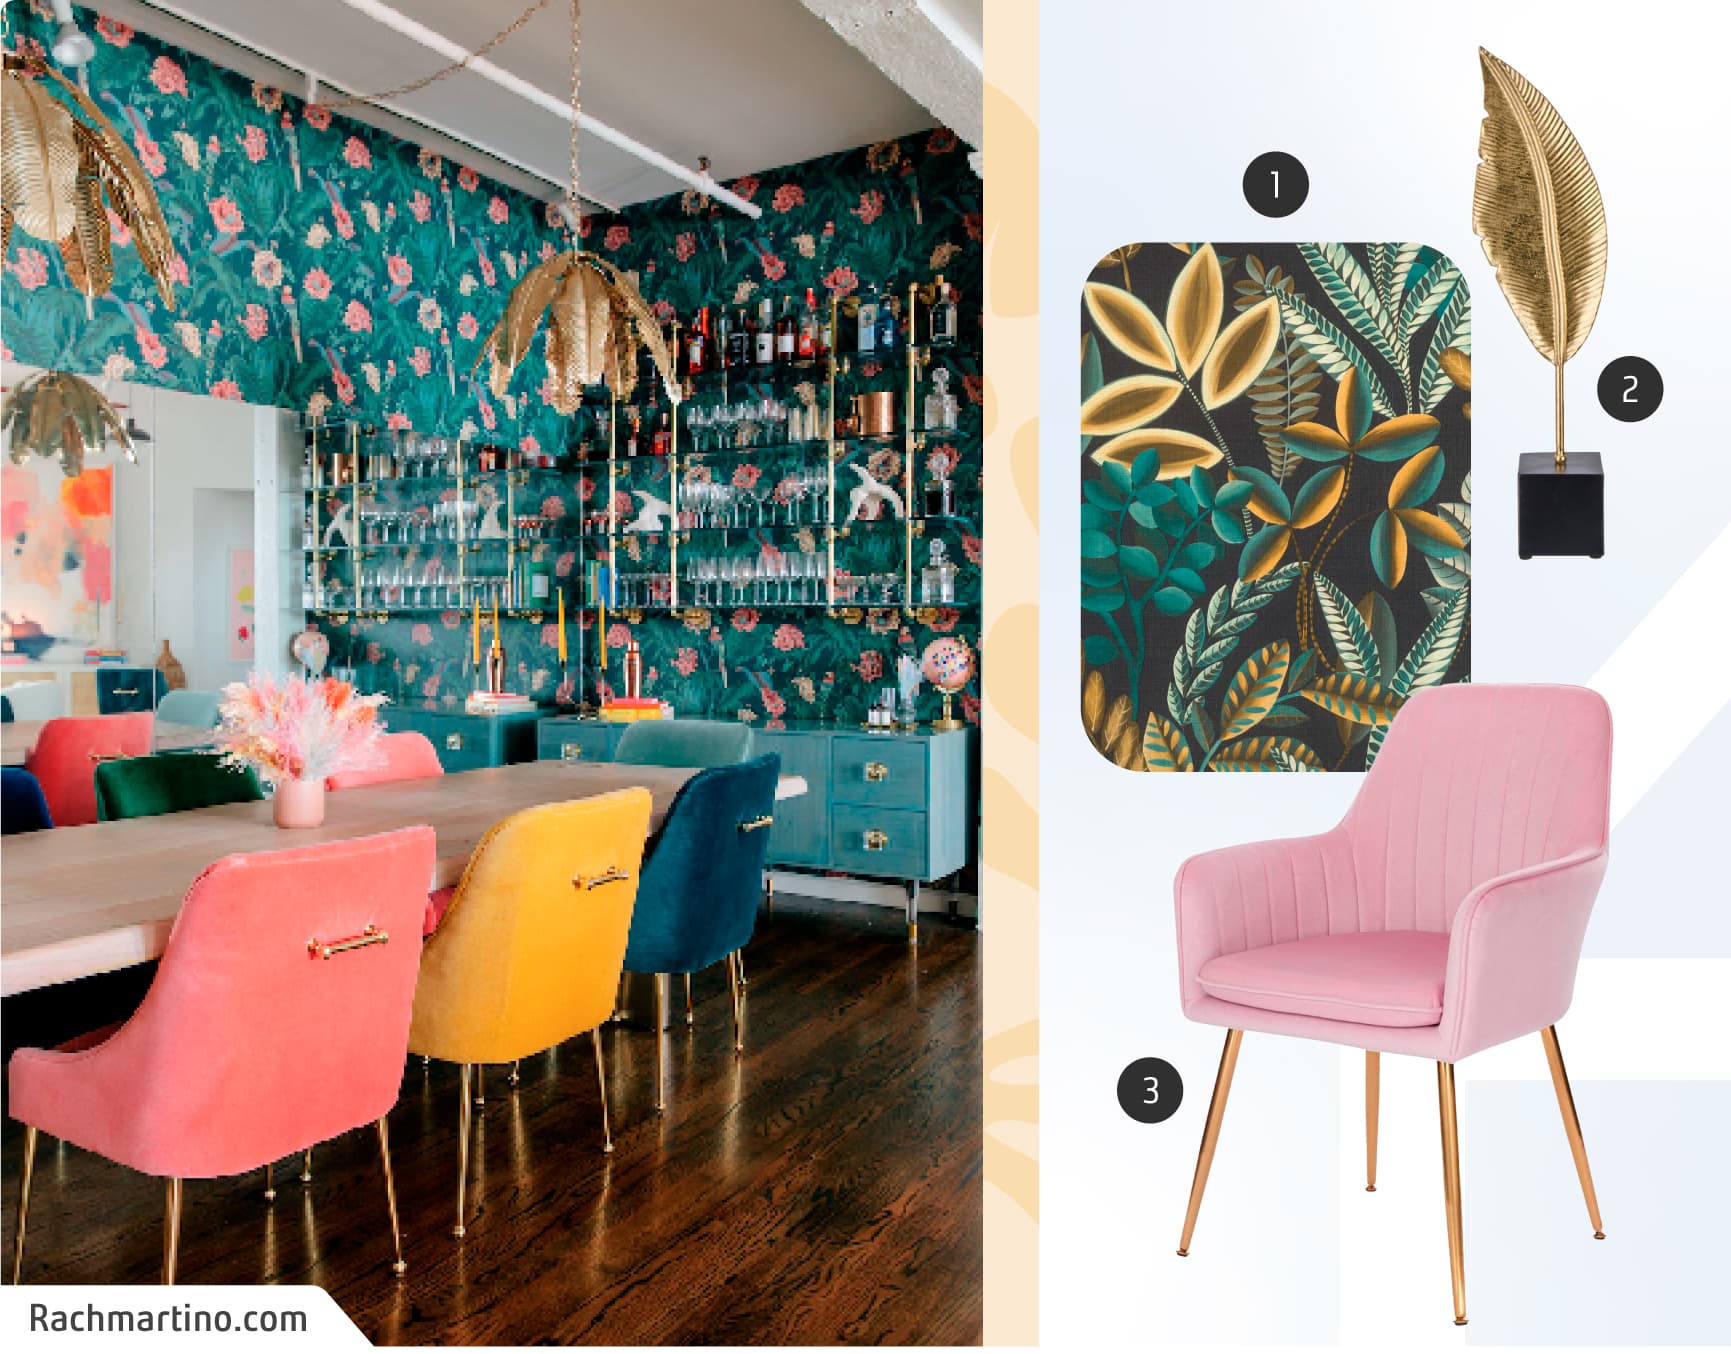 Moodboard de inspiración con una foto de un comedor de estilo maximalista con papel mural verde con flores, sillas de colores y un buffet calipso; y junto a ella, un papel mural de hojas verdes, una silla rosada y un adorno dorado.